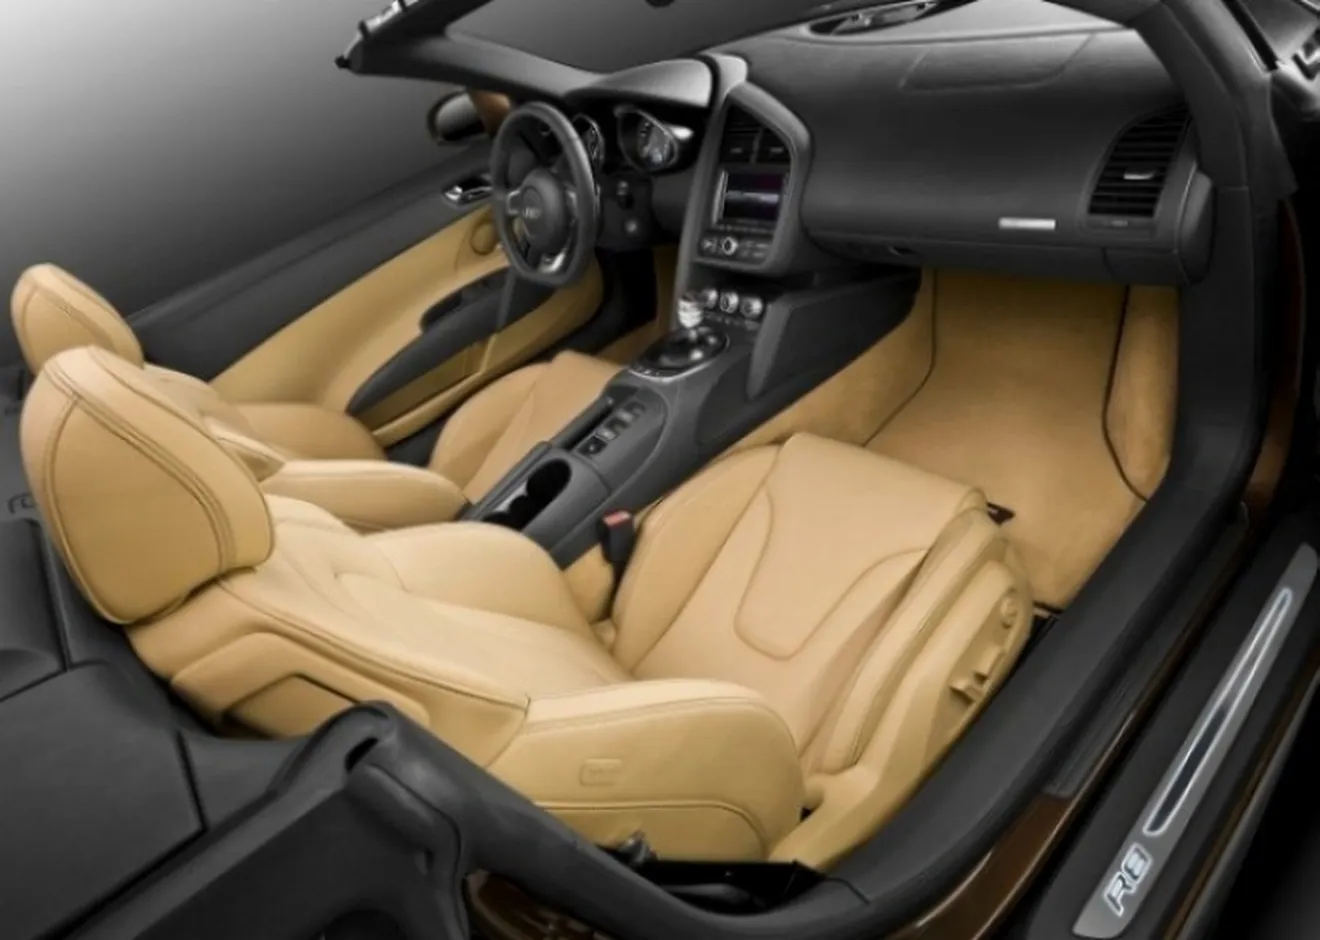 Más información sobre el Audi R8 Spyder